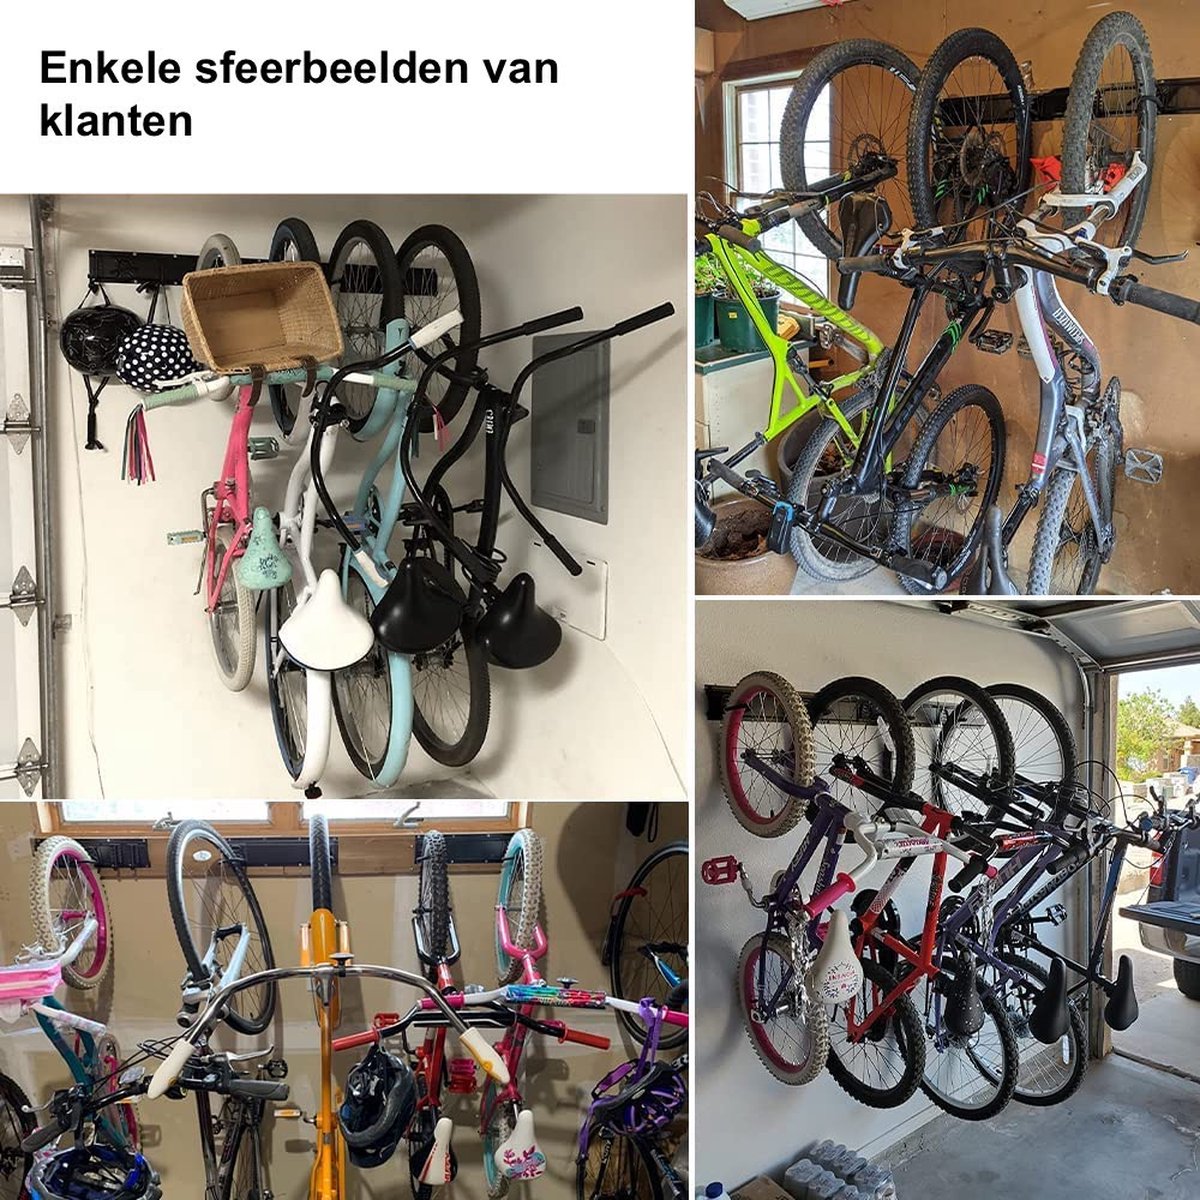 SODEAL Système de suspension pour vélo - Crochet de bicyclette - Support de suspension  pour vélo - Support mural pour vélo - Support de vélo - Support de vélo :  : Sports et Loisirs